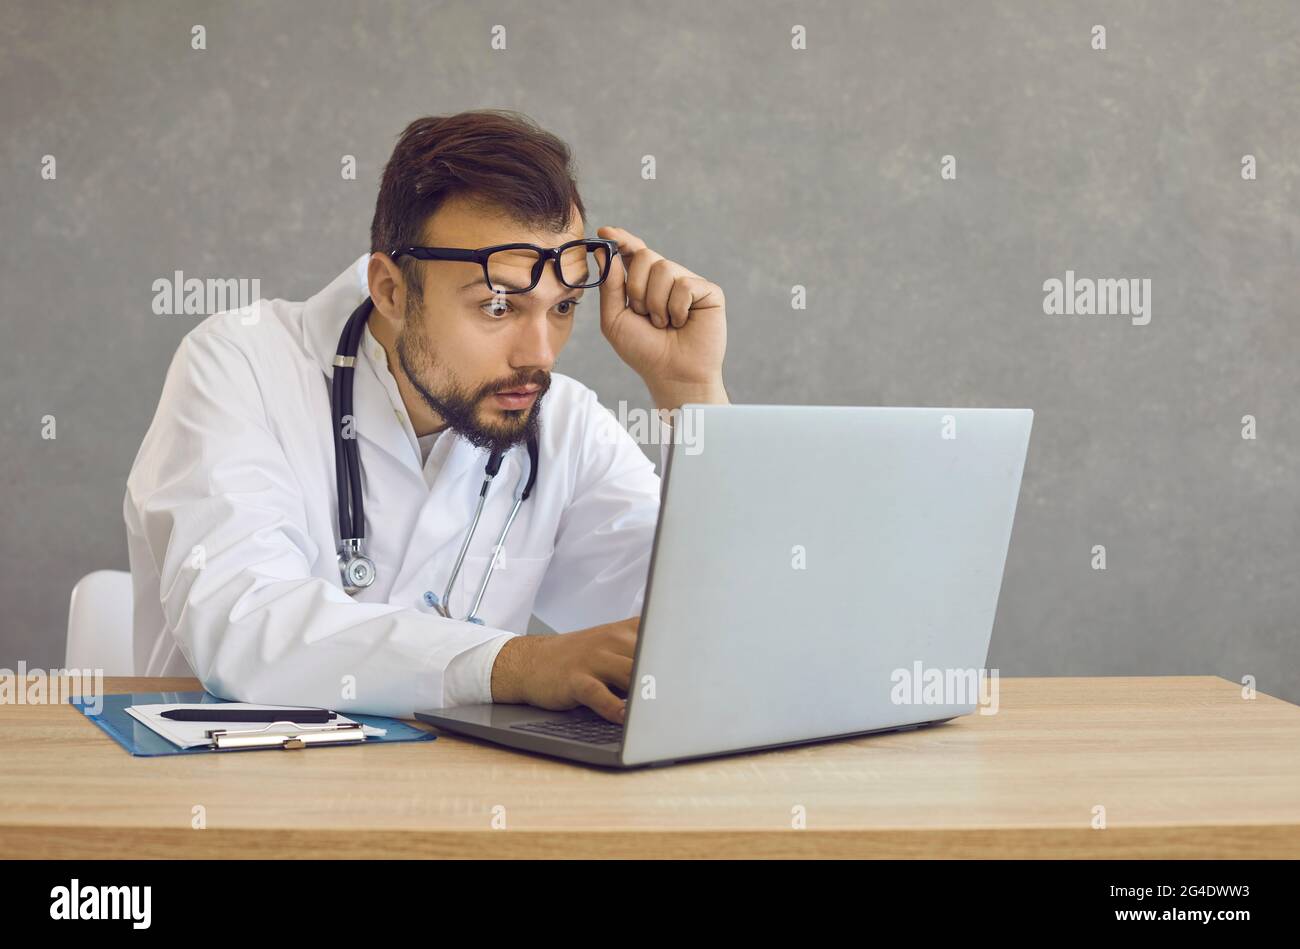 Un médecin masculin avec une expression choquée et confuse regarde un écran d'ordinateur portable voyant une erreur médicale. Banque D'Images